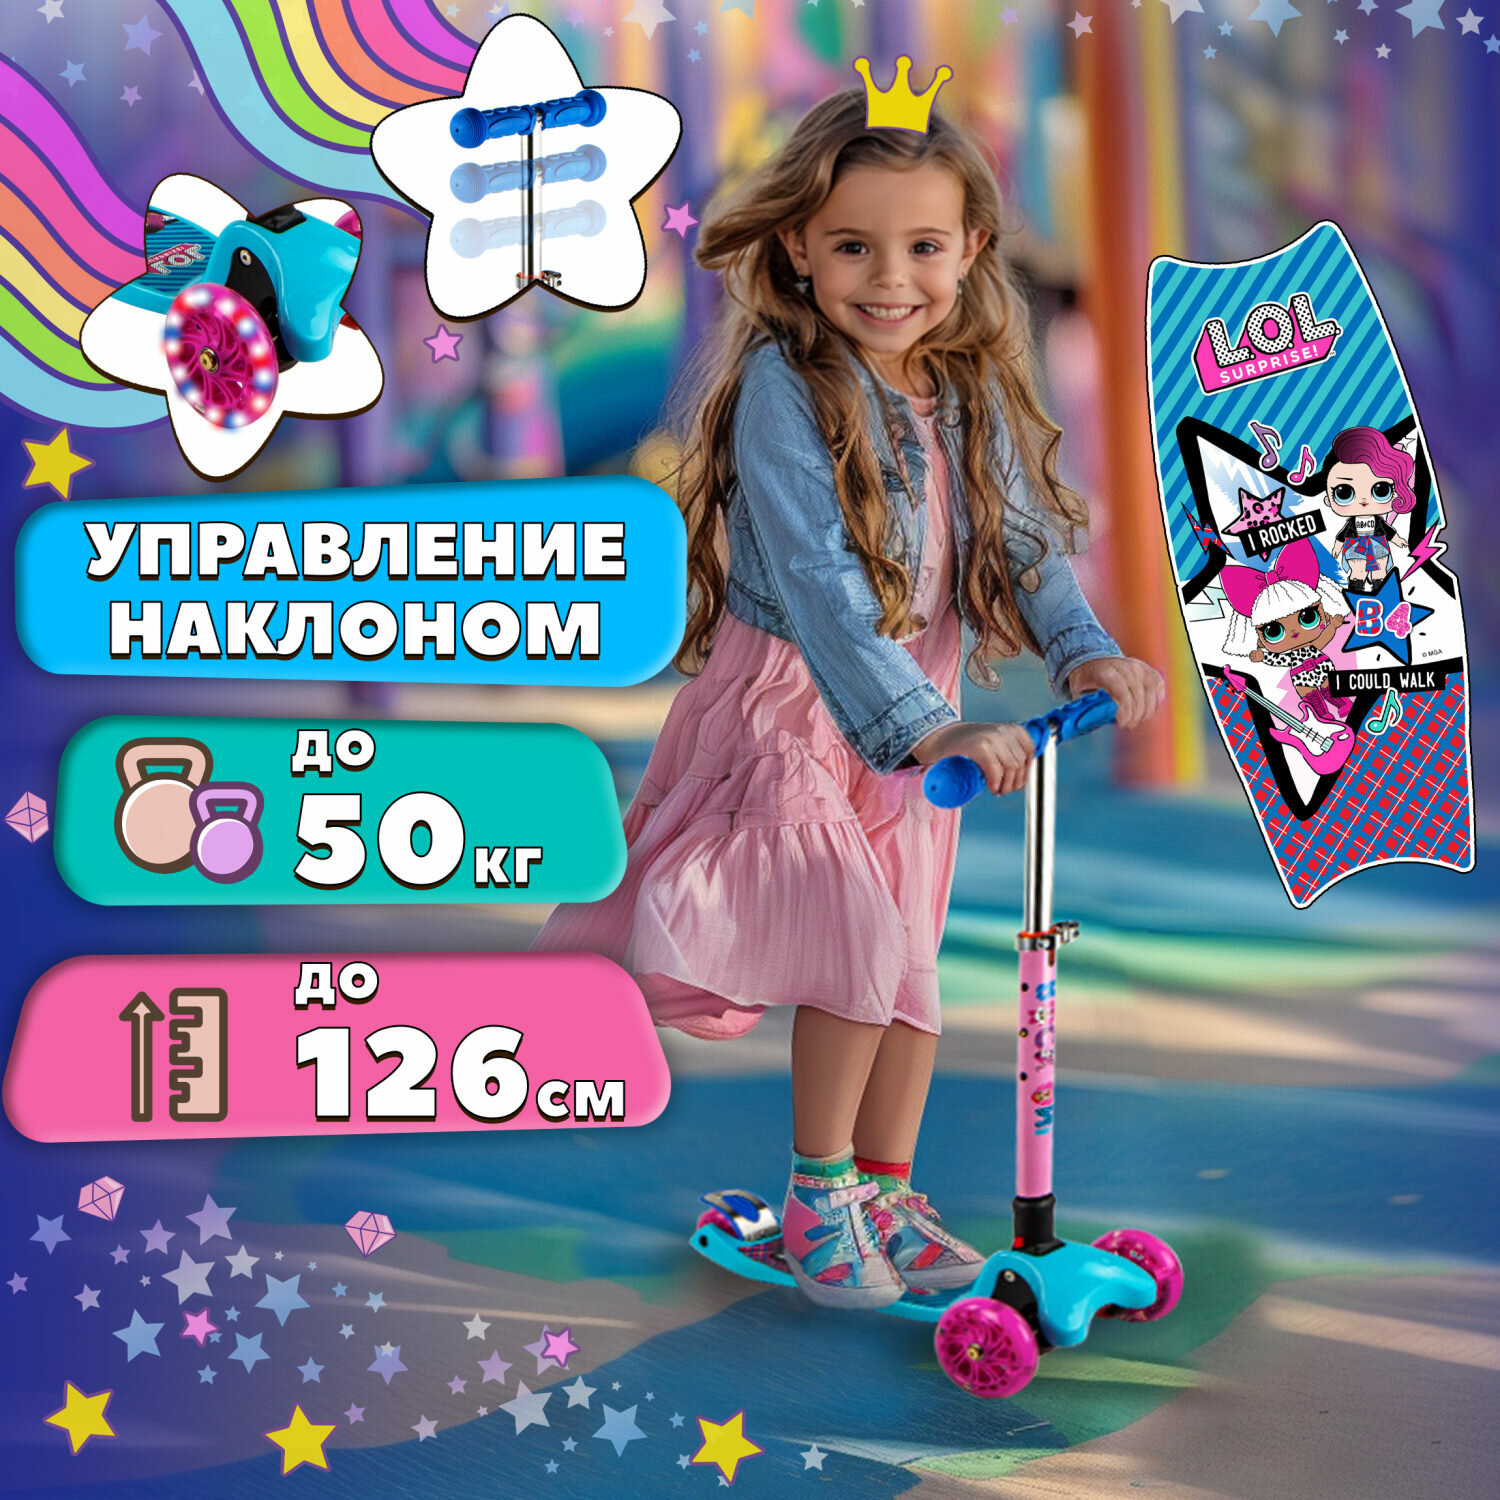 Самокат - кикборд детский трехколесный LOL для девочки розовый со светящимися колесами, регулируемым рулем, ручками TPR